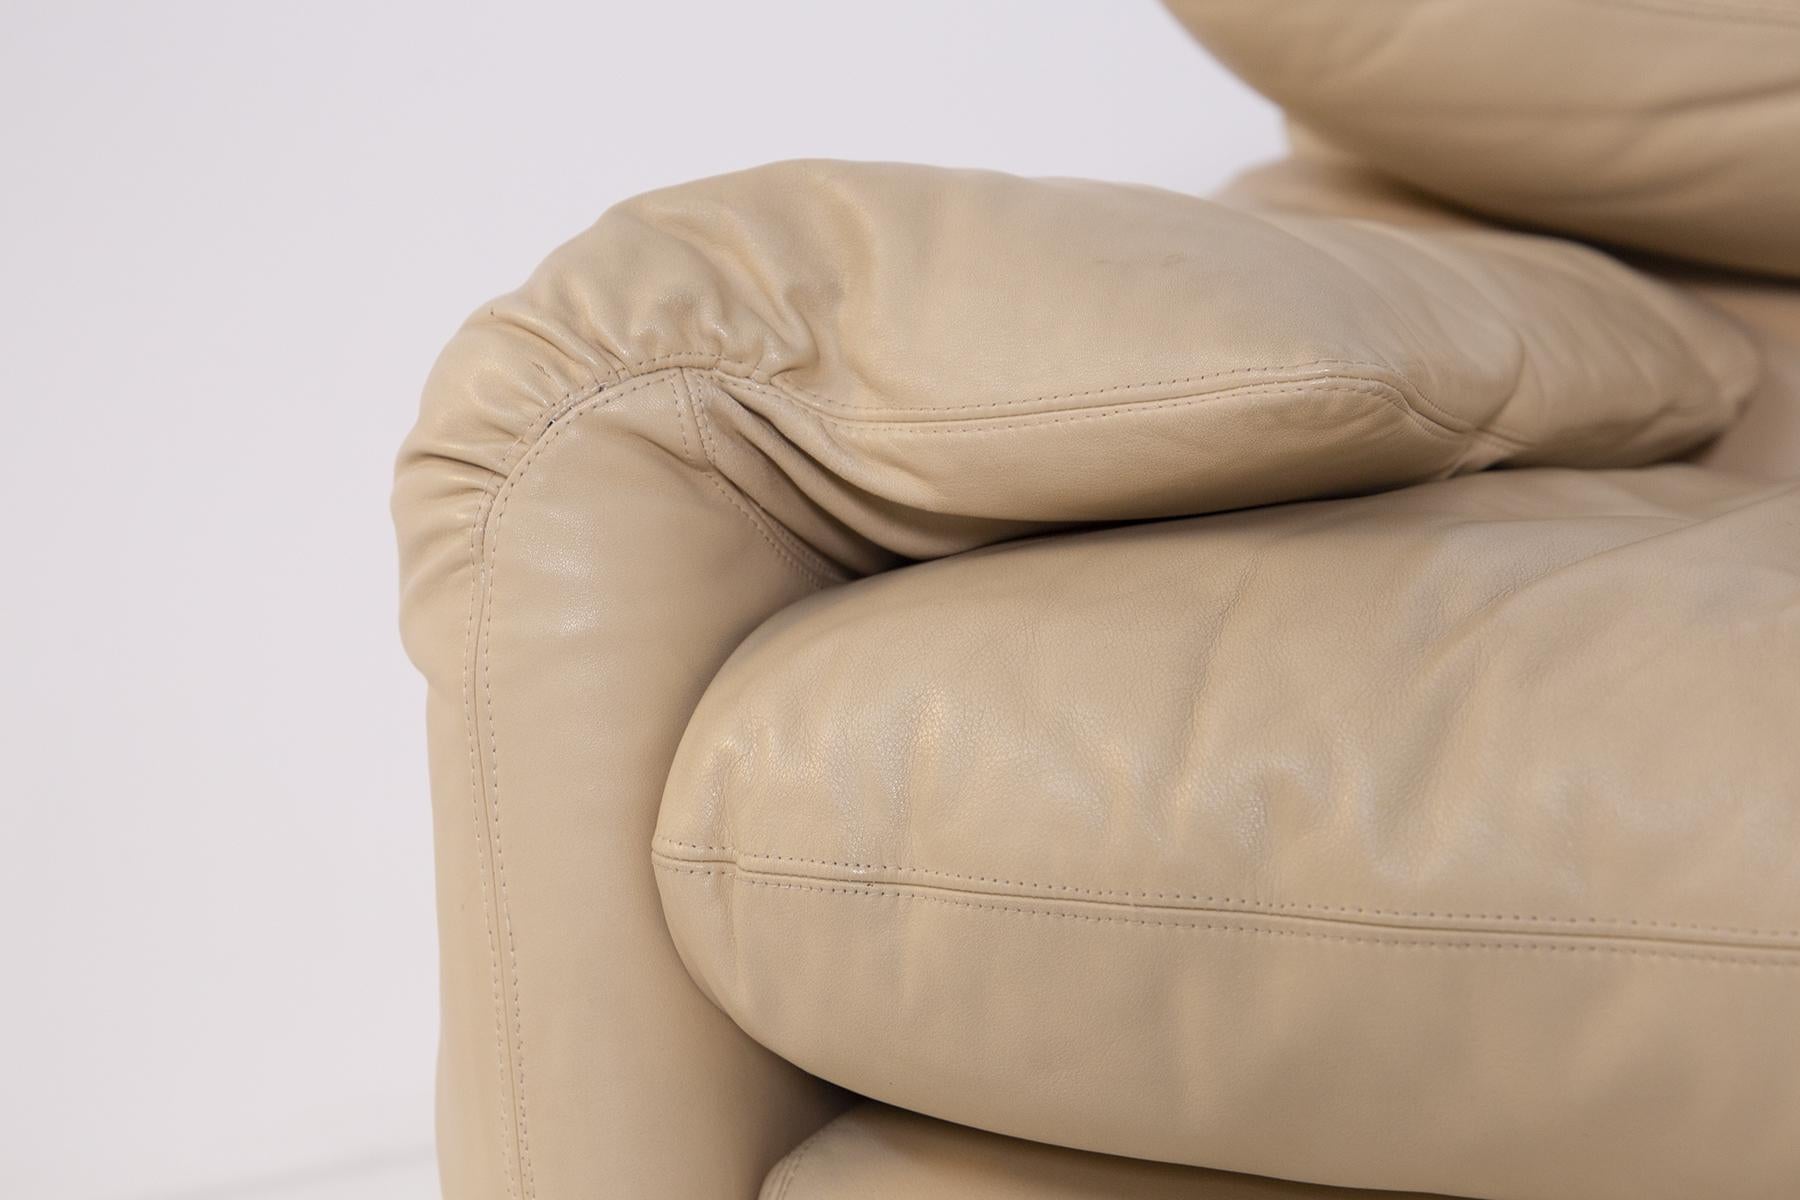 Vico Magistretti Italian Sofa in Leather for Cassina, First Edition 3